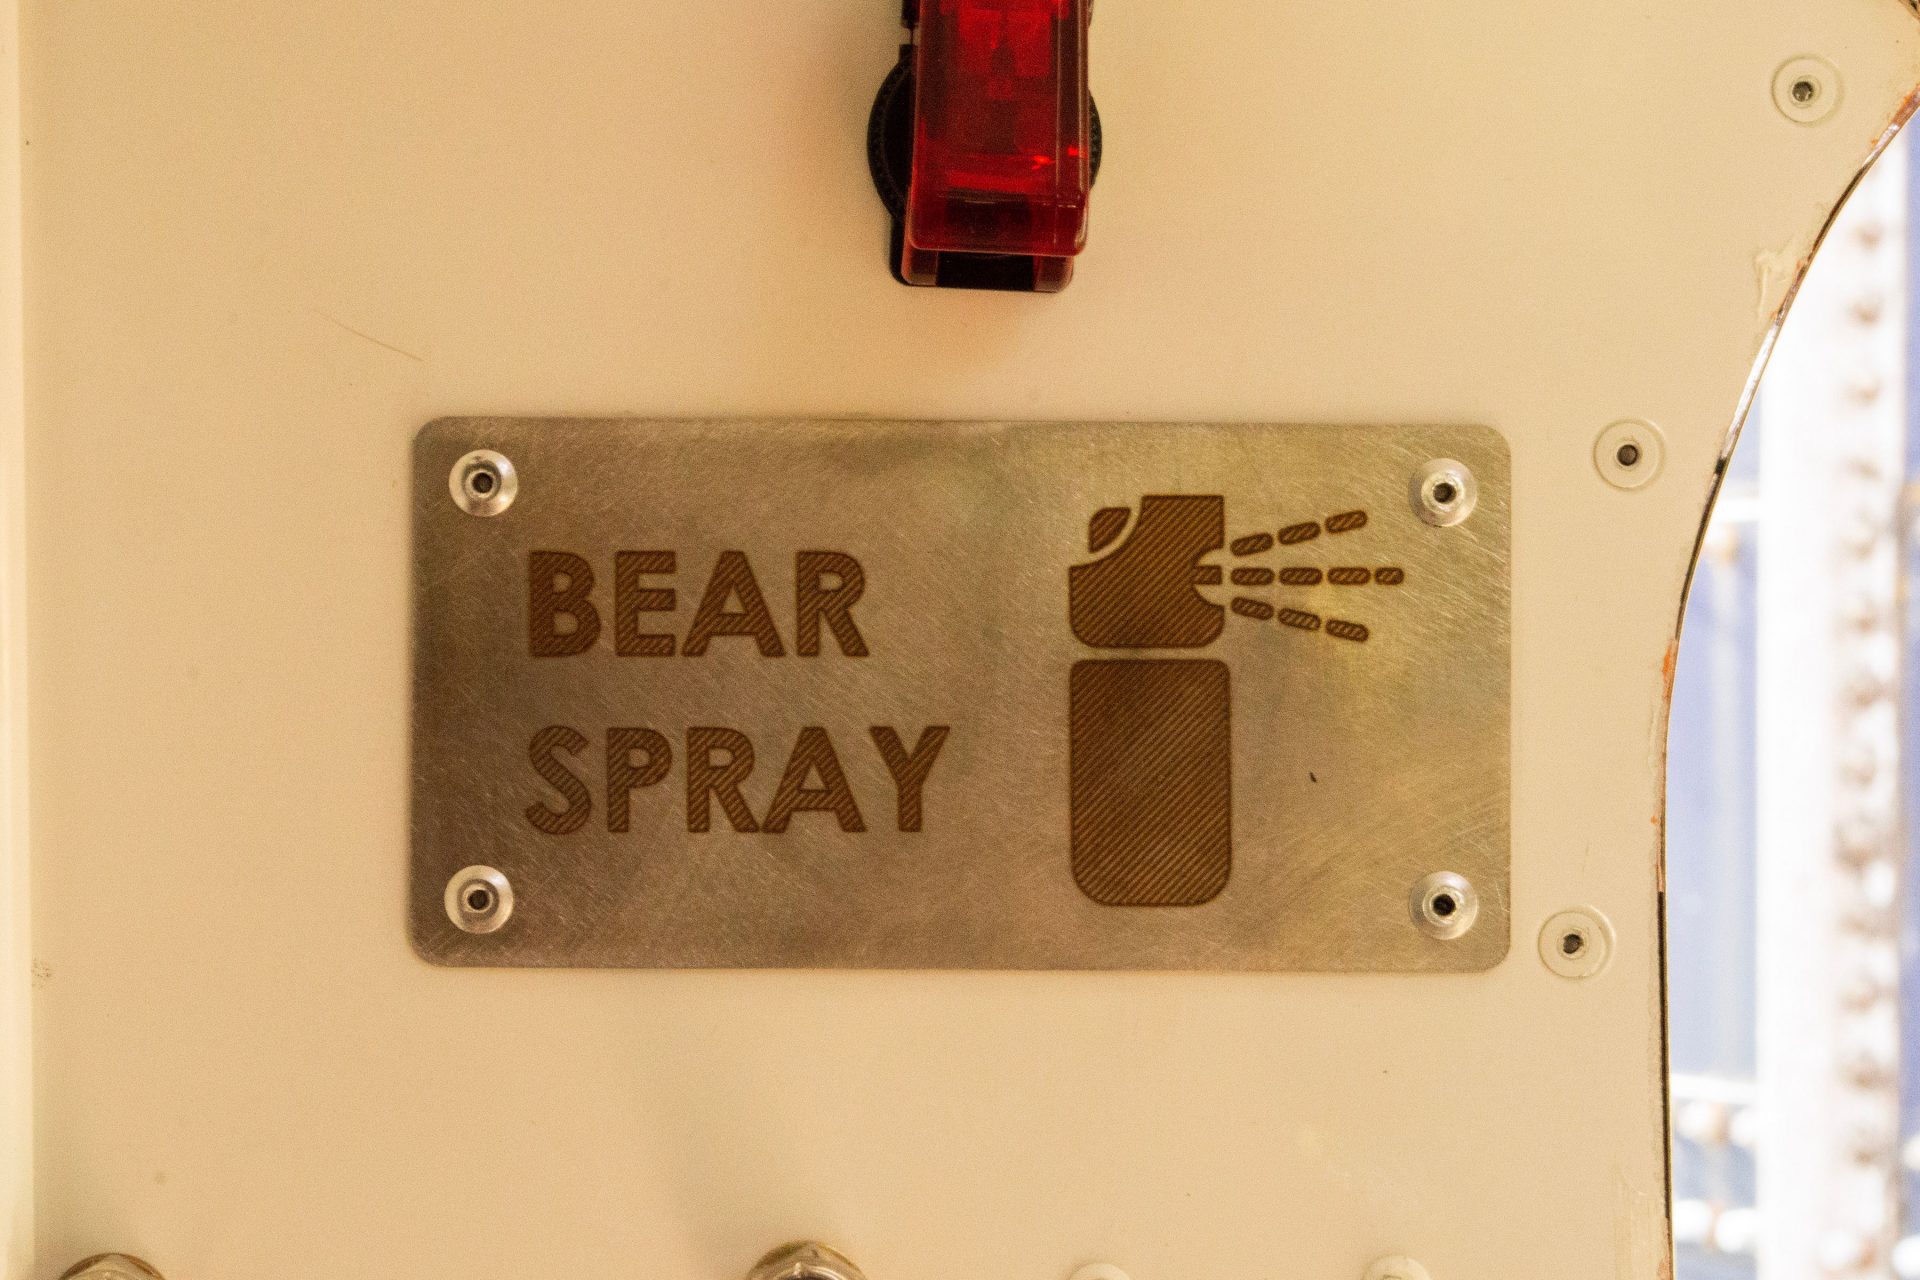 Bear spray defense system